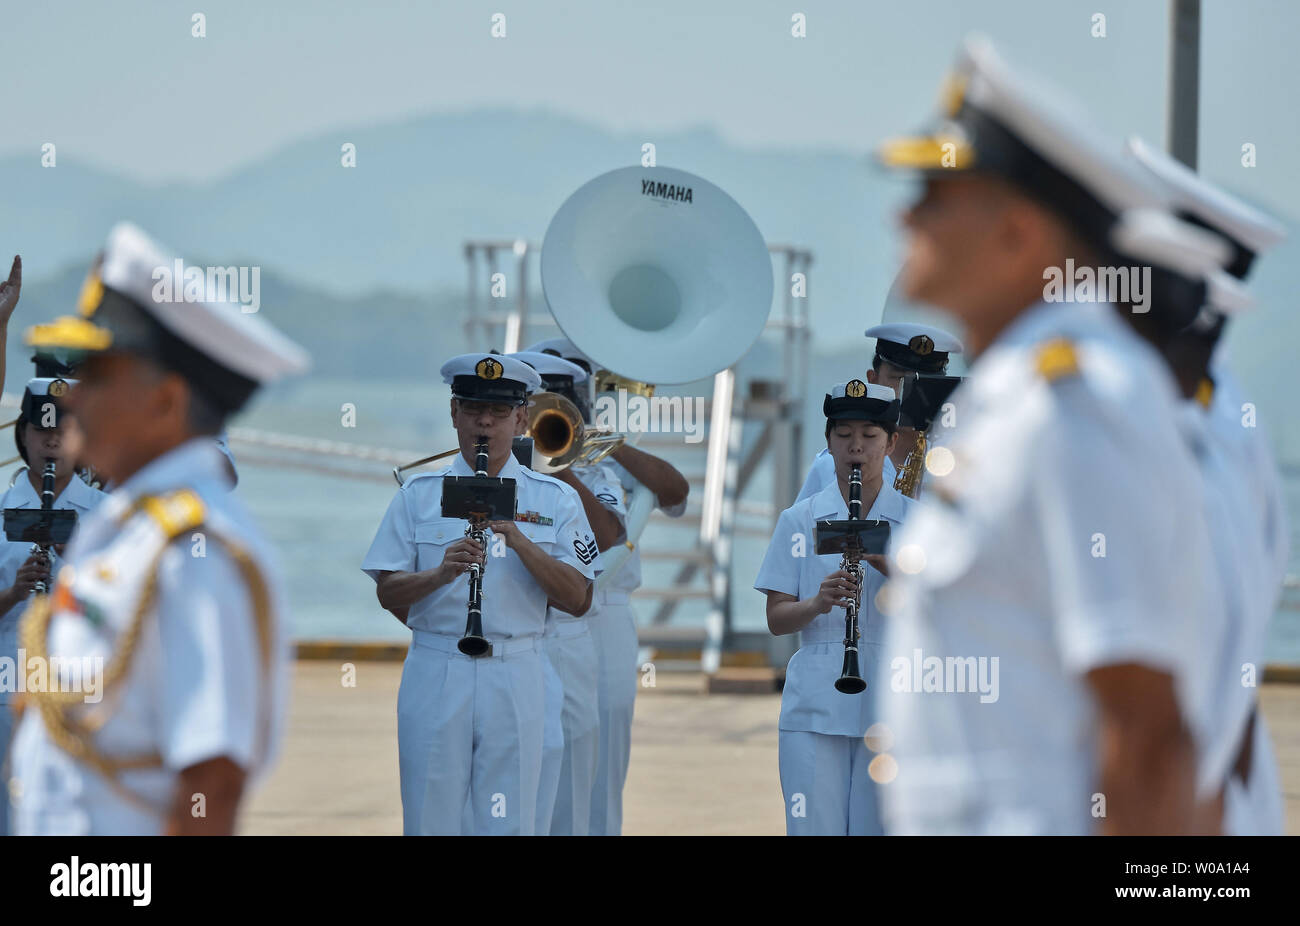 Giappone di autodifesa marittima Force Band di Sasebo riprodurre durante una cerimonia di benvenuto per l'India Marina presso U.S. Le attività della flotta Sasebo, Prefettura di Nagasaki, Giappone il 10 giugno 2016. Foto di Keizo Mori/UPI Foto Stock